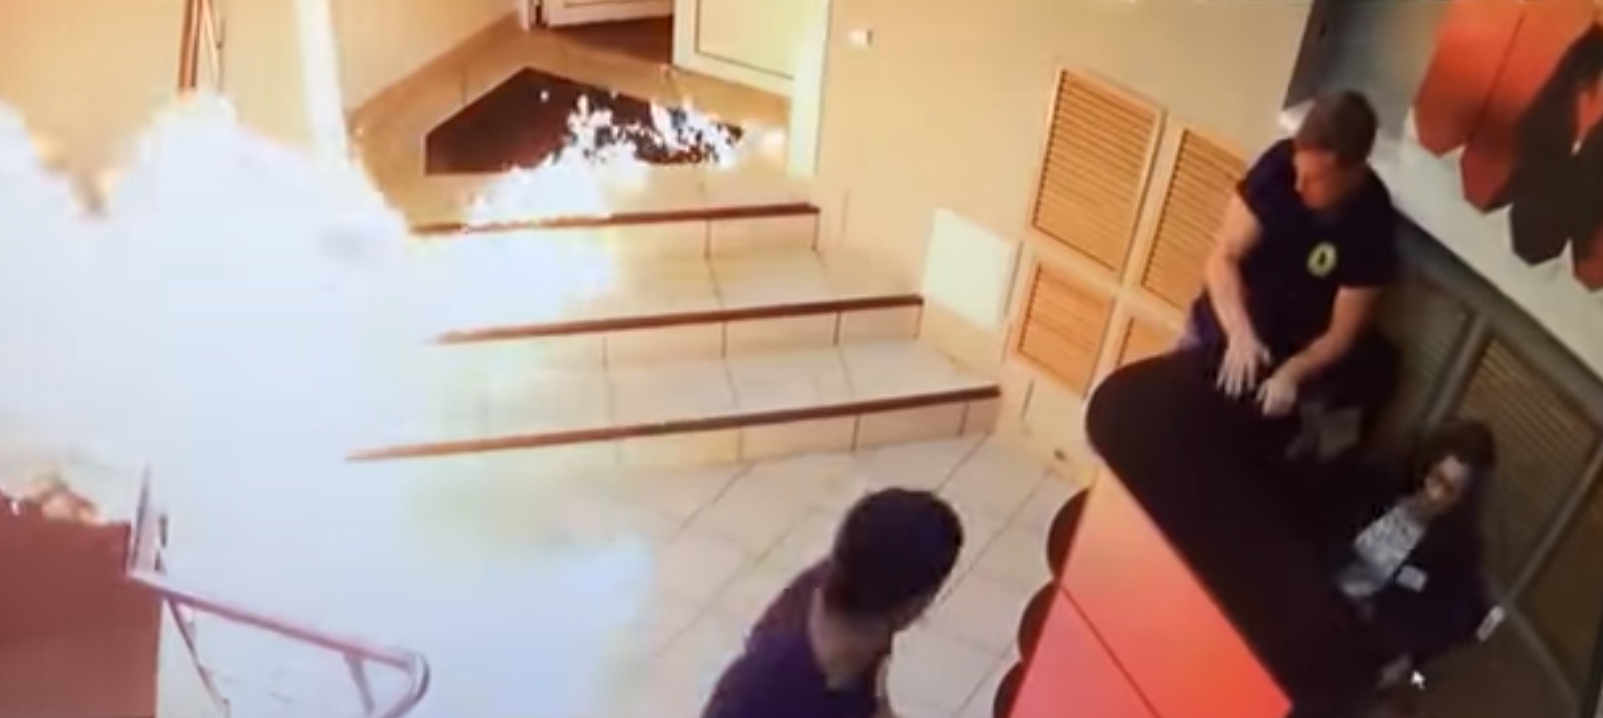 В одном из нижегородских клубов пытались сжечь охранников (ВИДЕО)